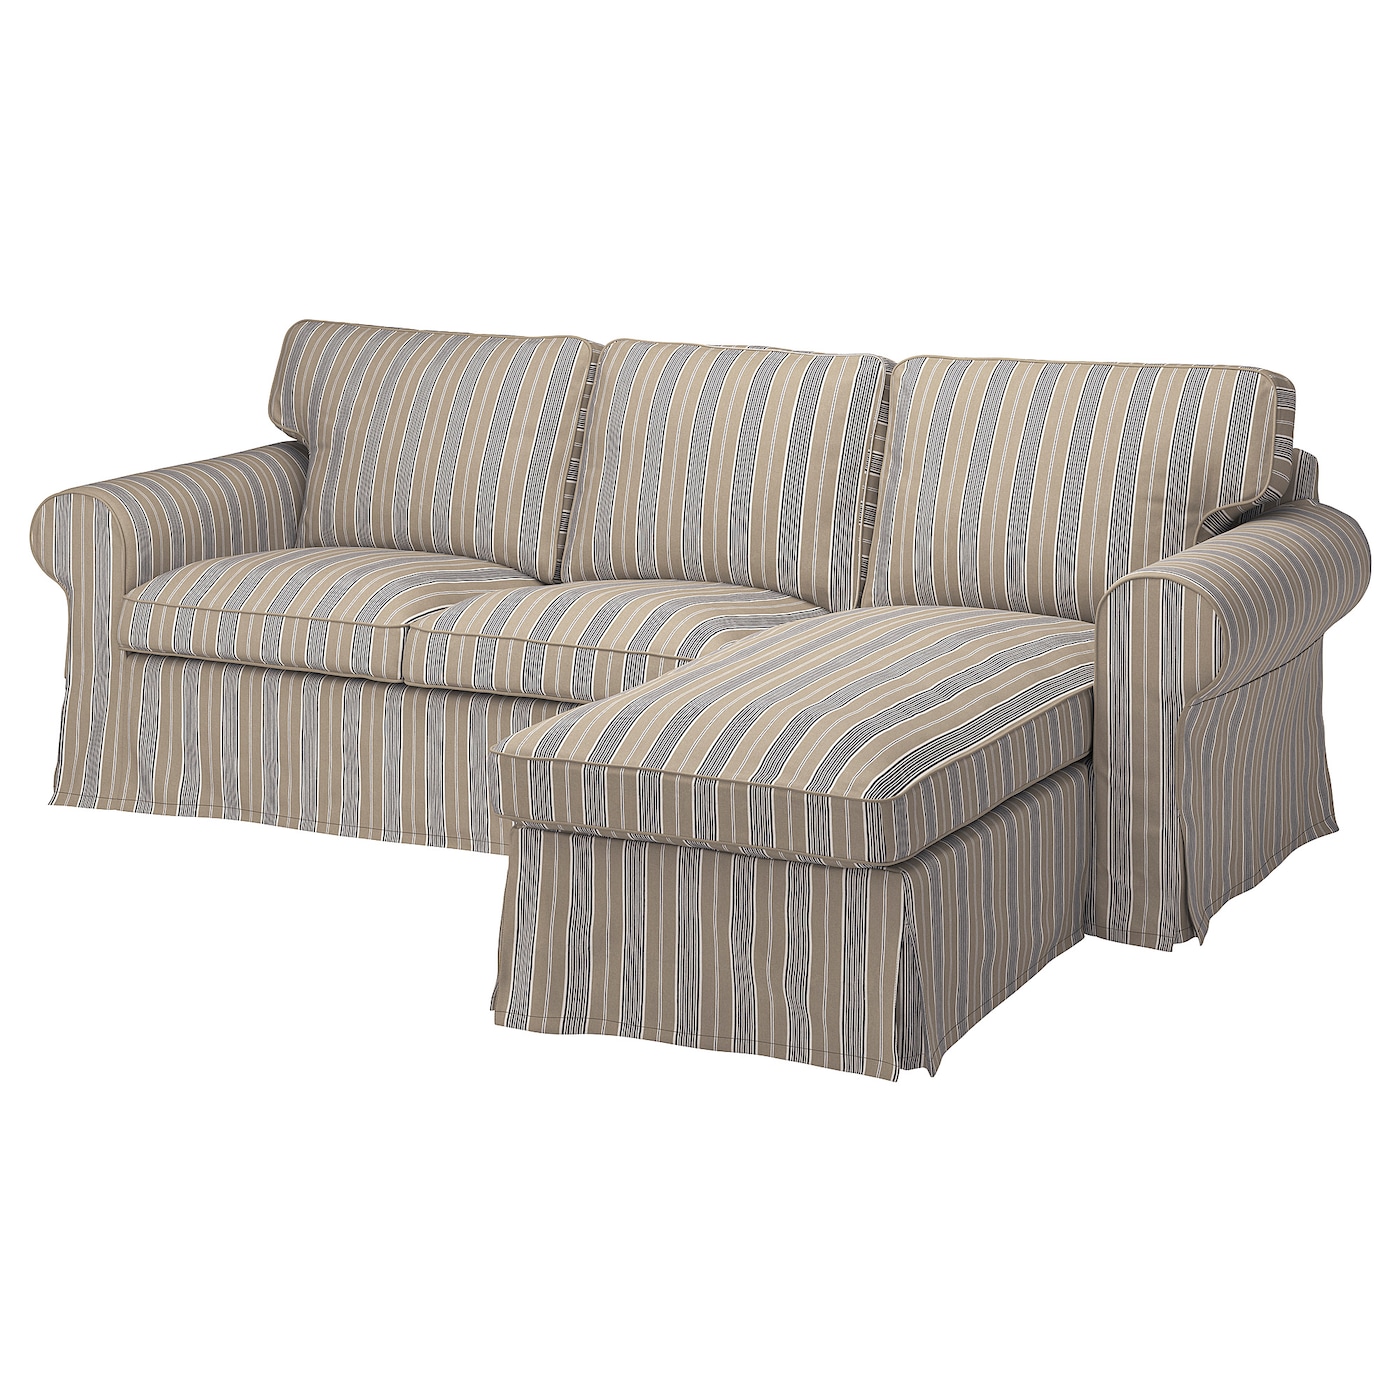 ЭКТОРП 3-местный диван + диван, Карлшов бежевый/мультиколор EKTORP IKEA